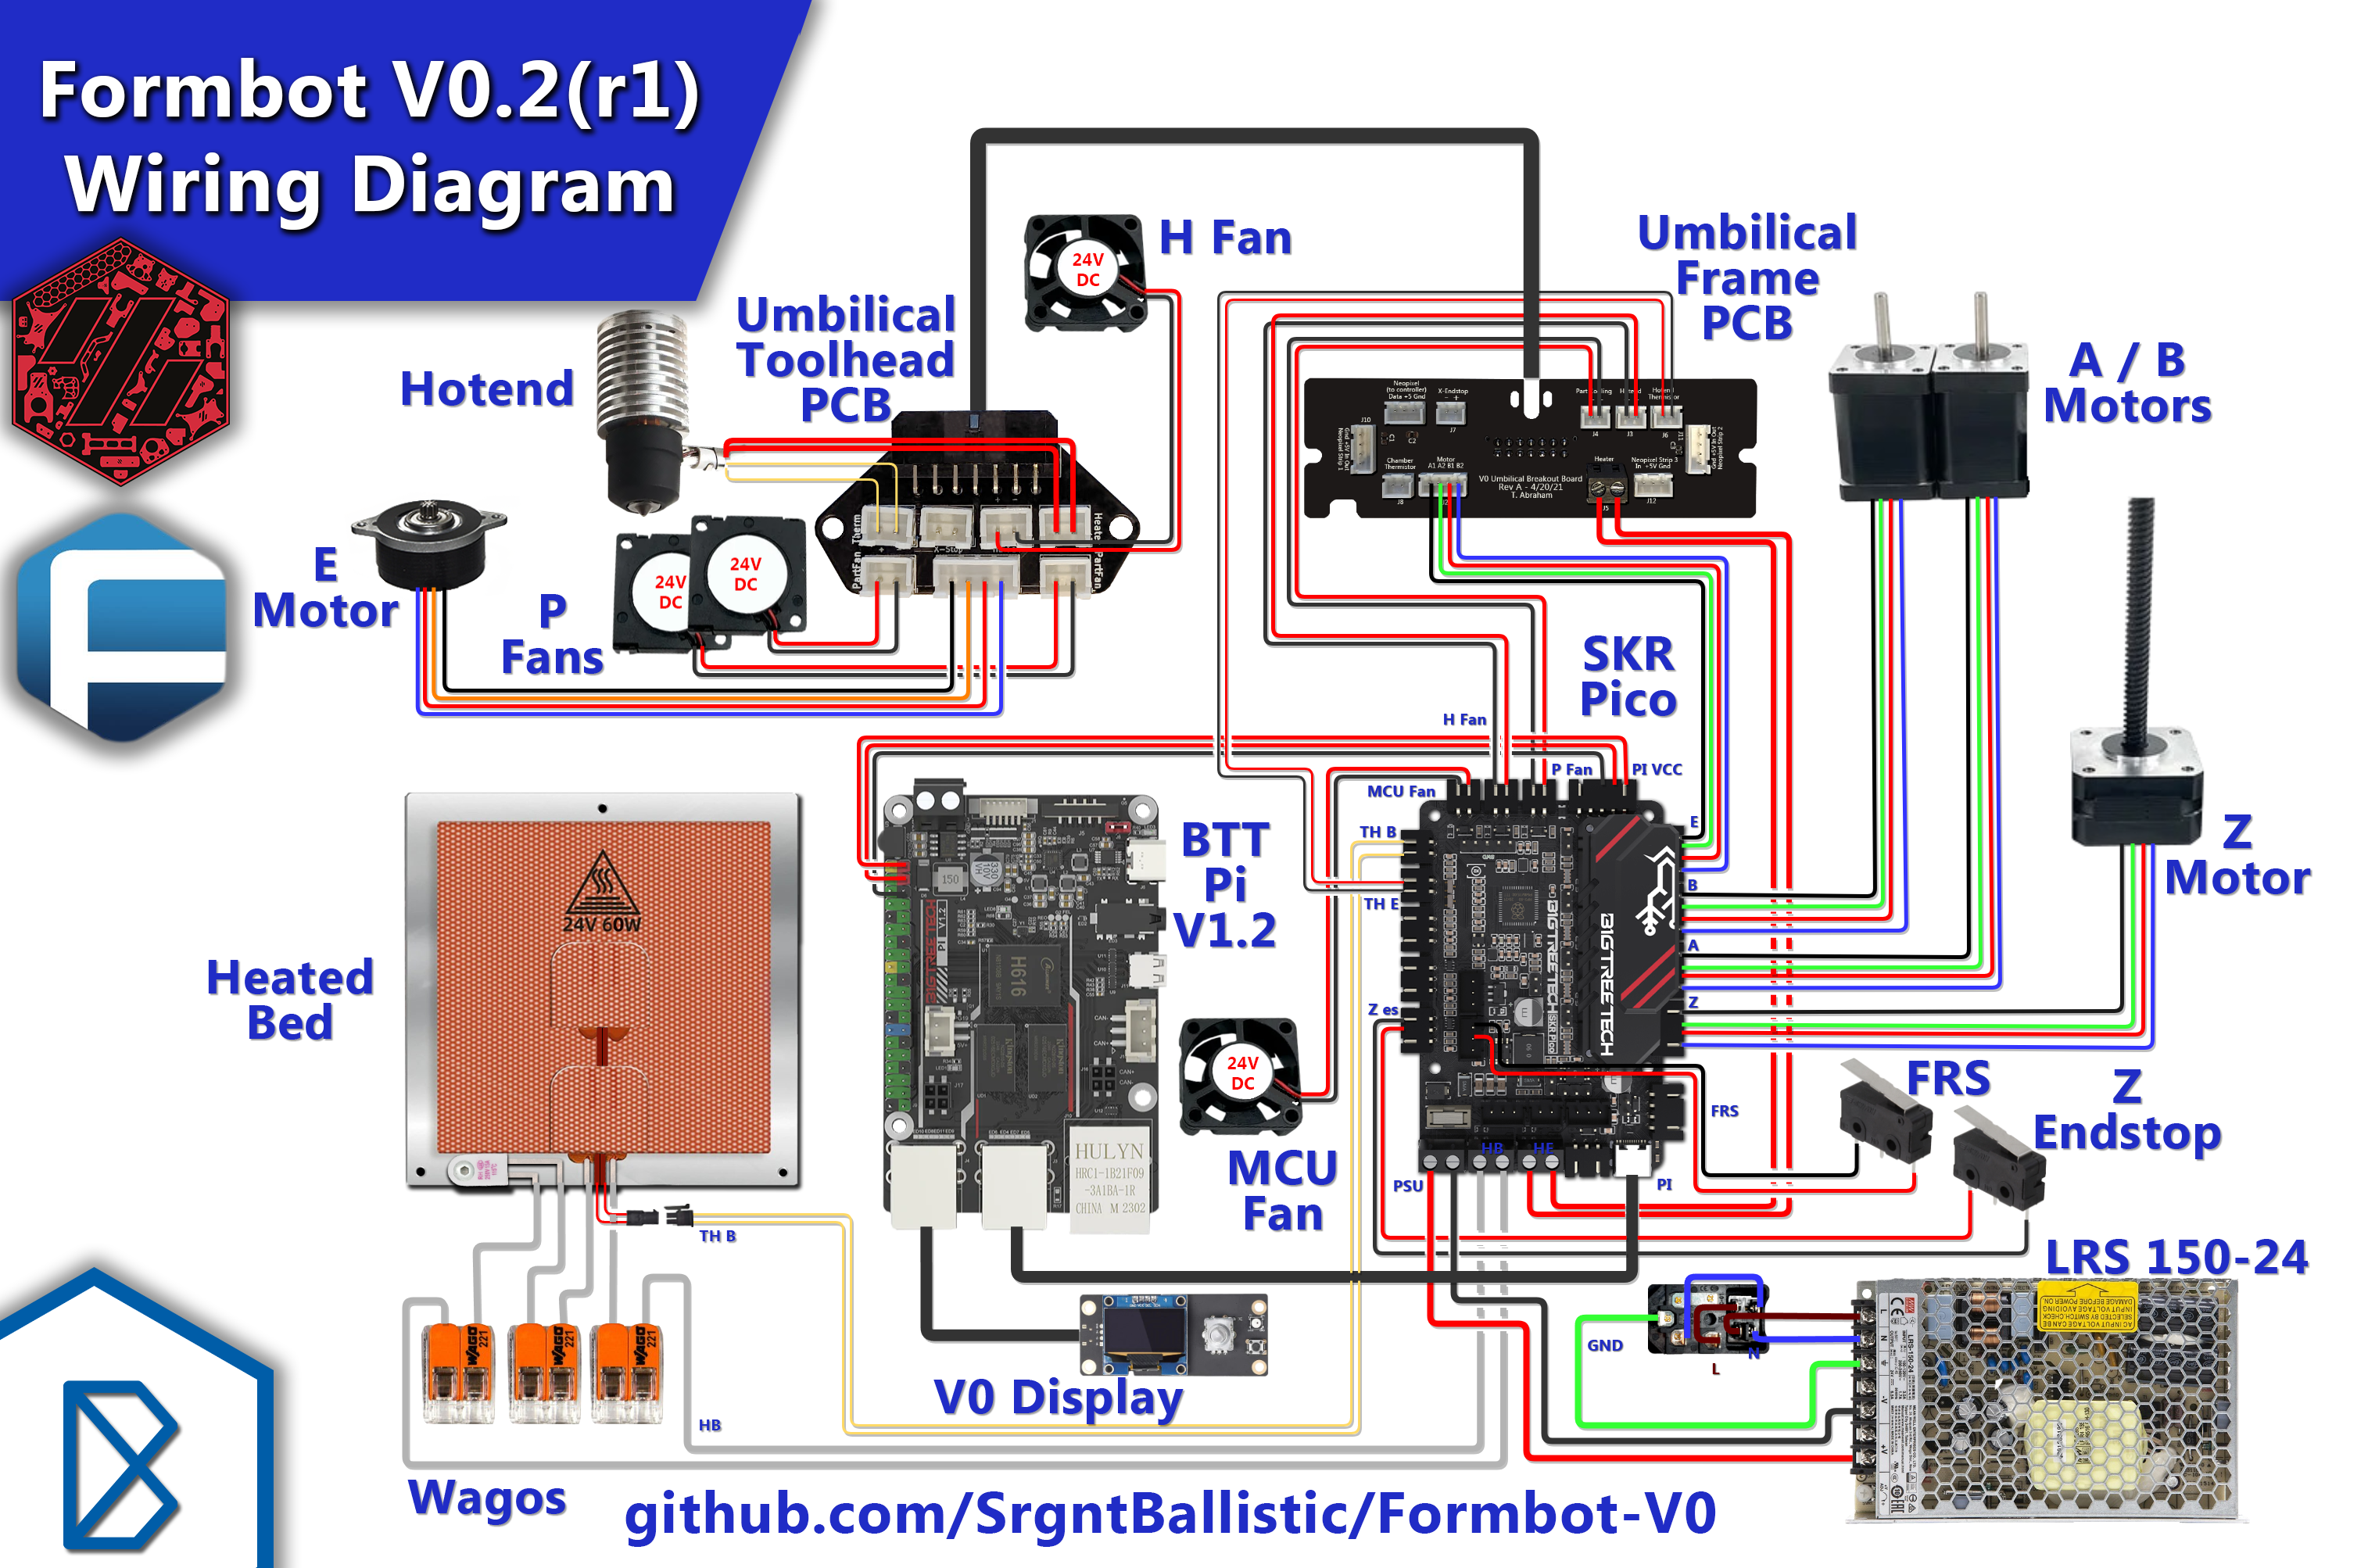 Stock Formbot V0.2(r1) Wiring Diagram